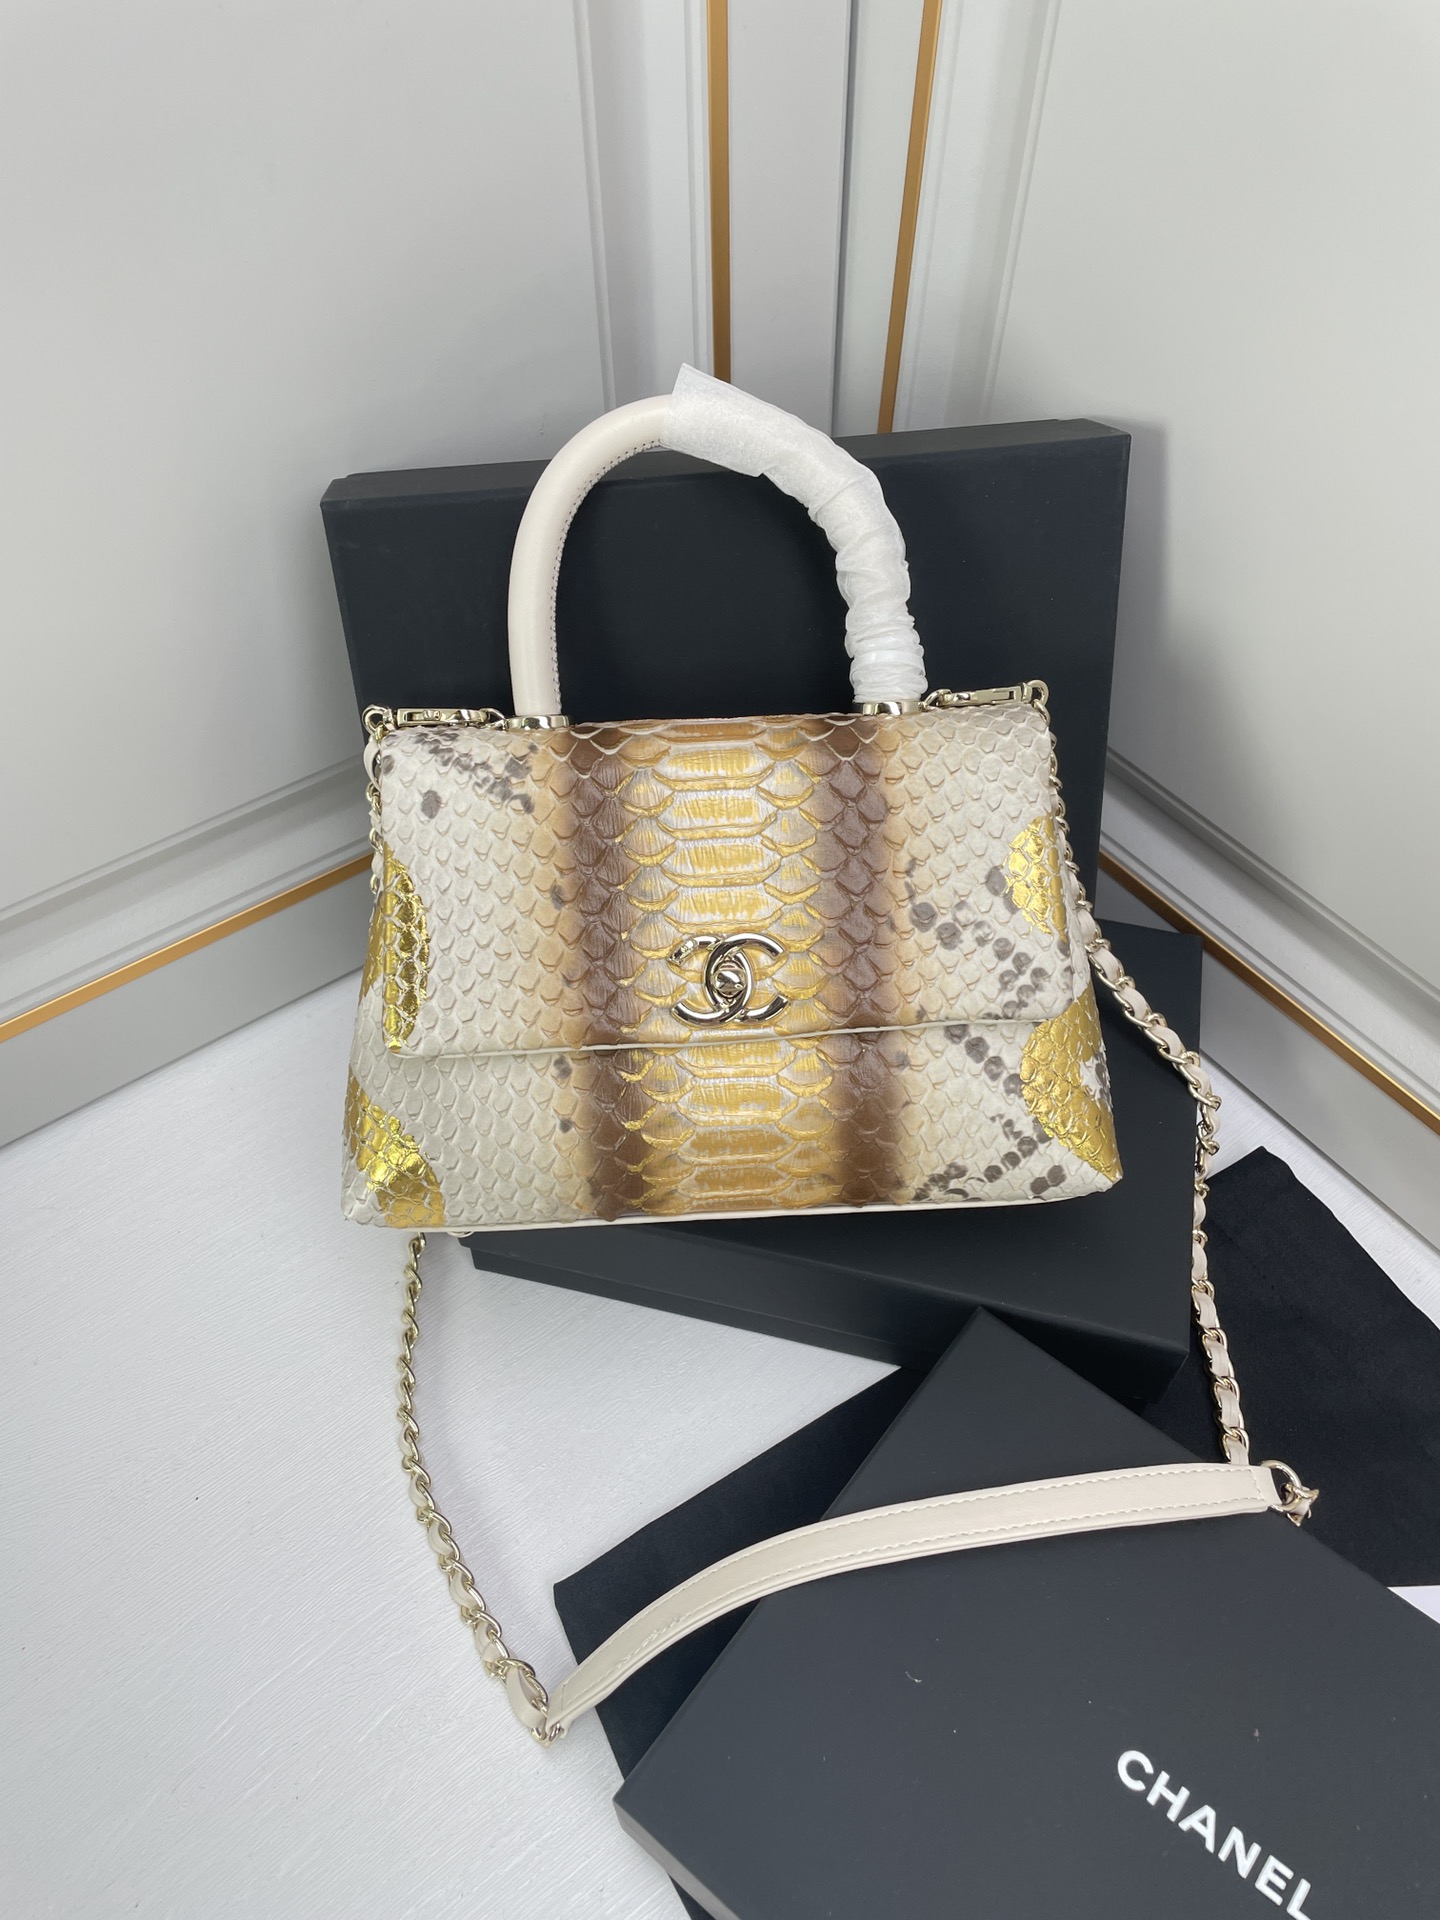 Chanel Coco Handle Bags Handbags Cowhide